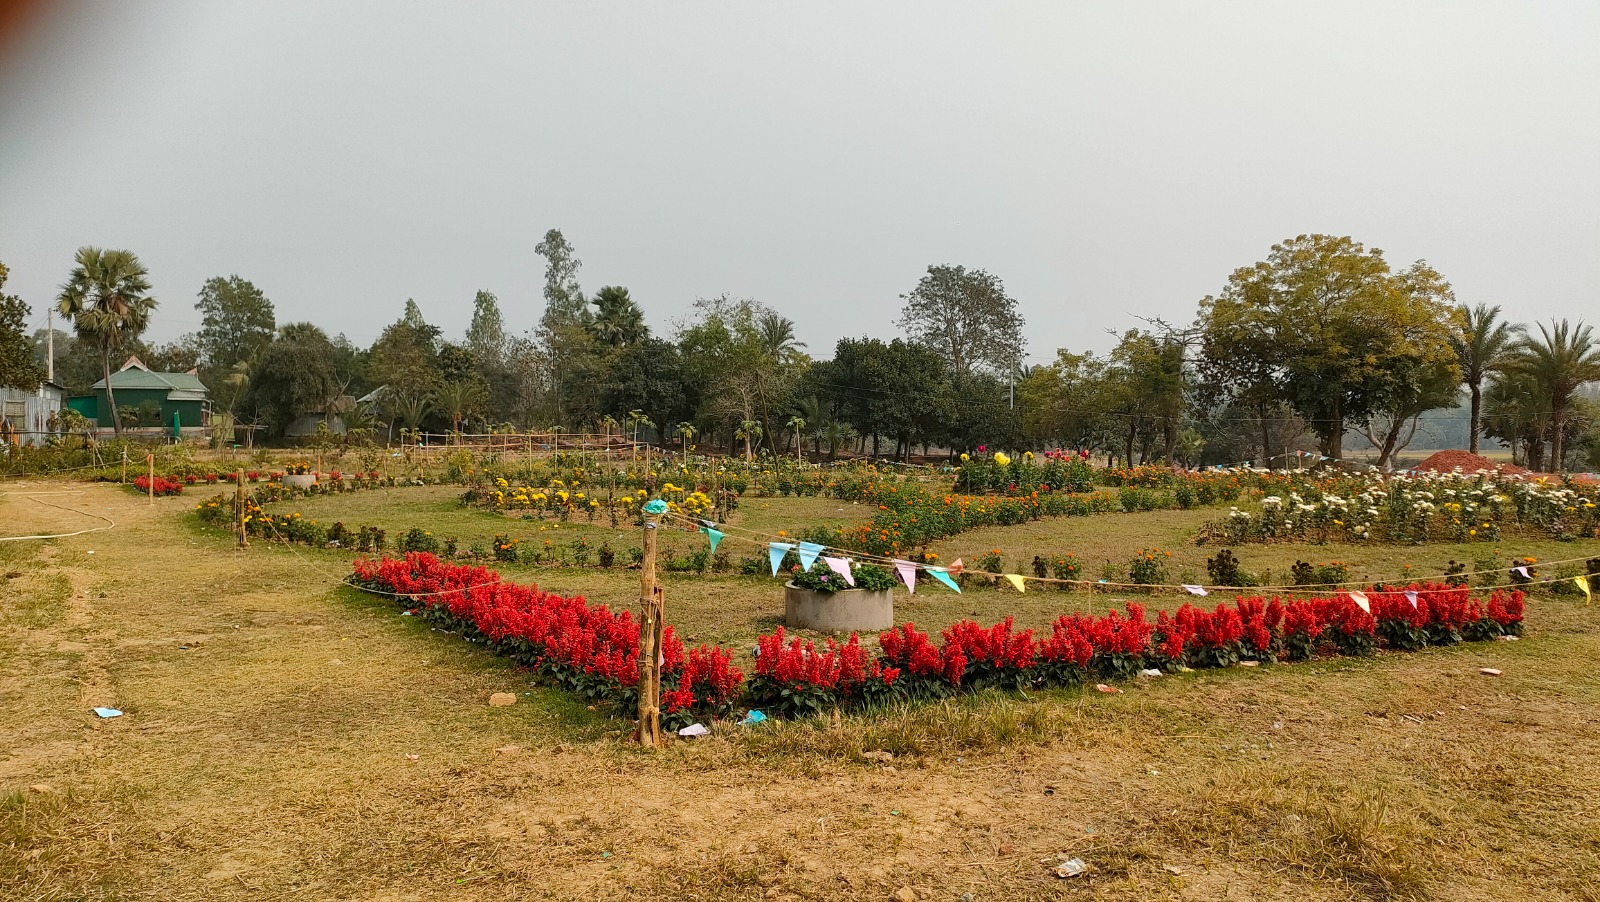 Kazi Nazrul Islam Park